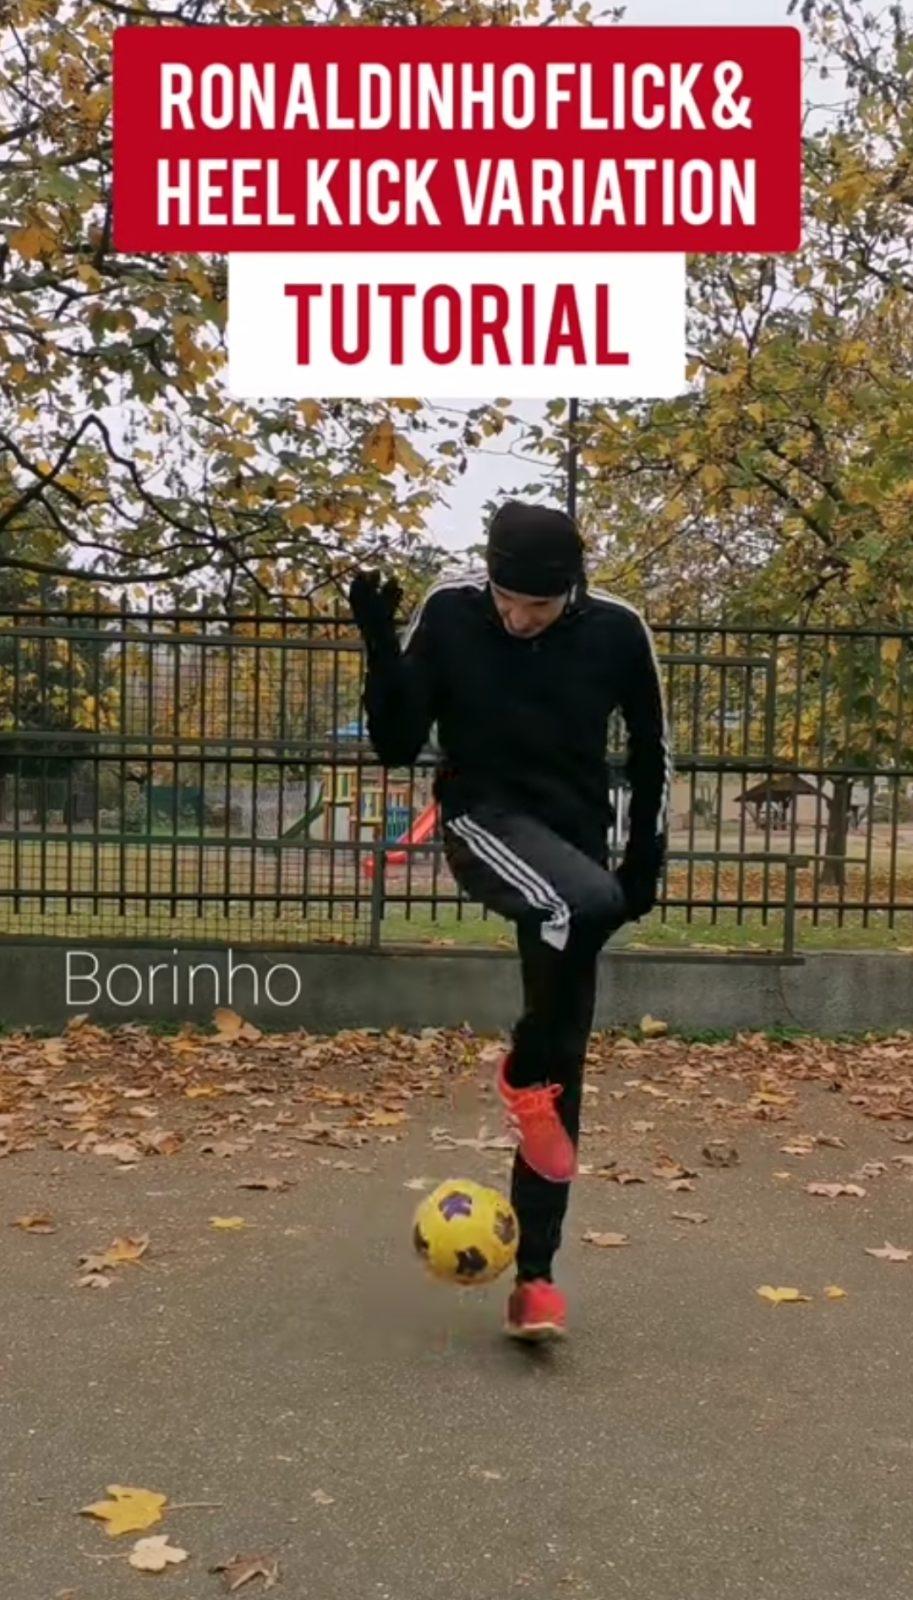 Ronaldinho flick and heel kick tutorial